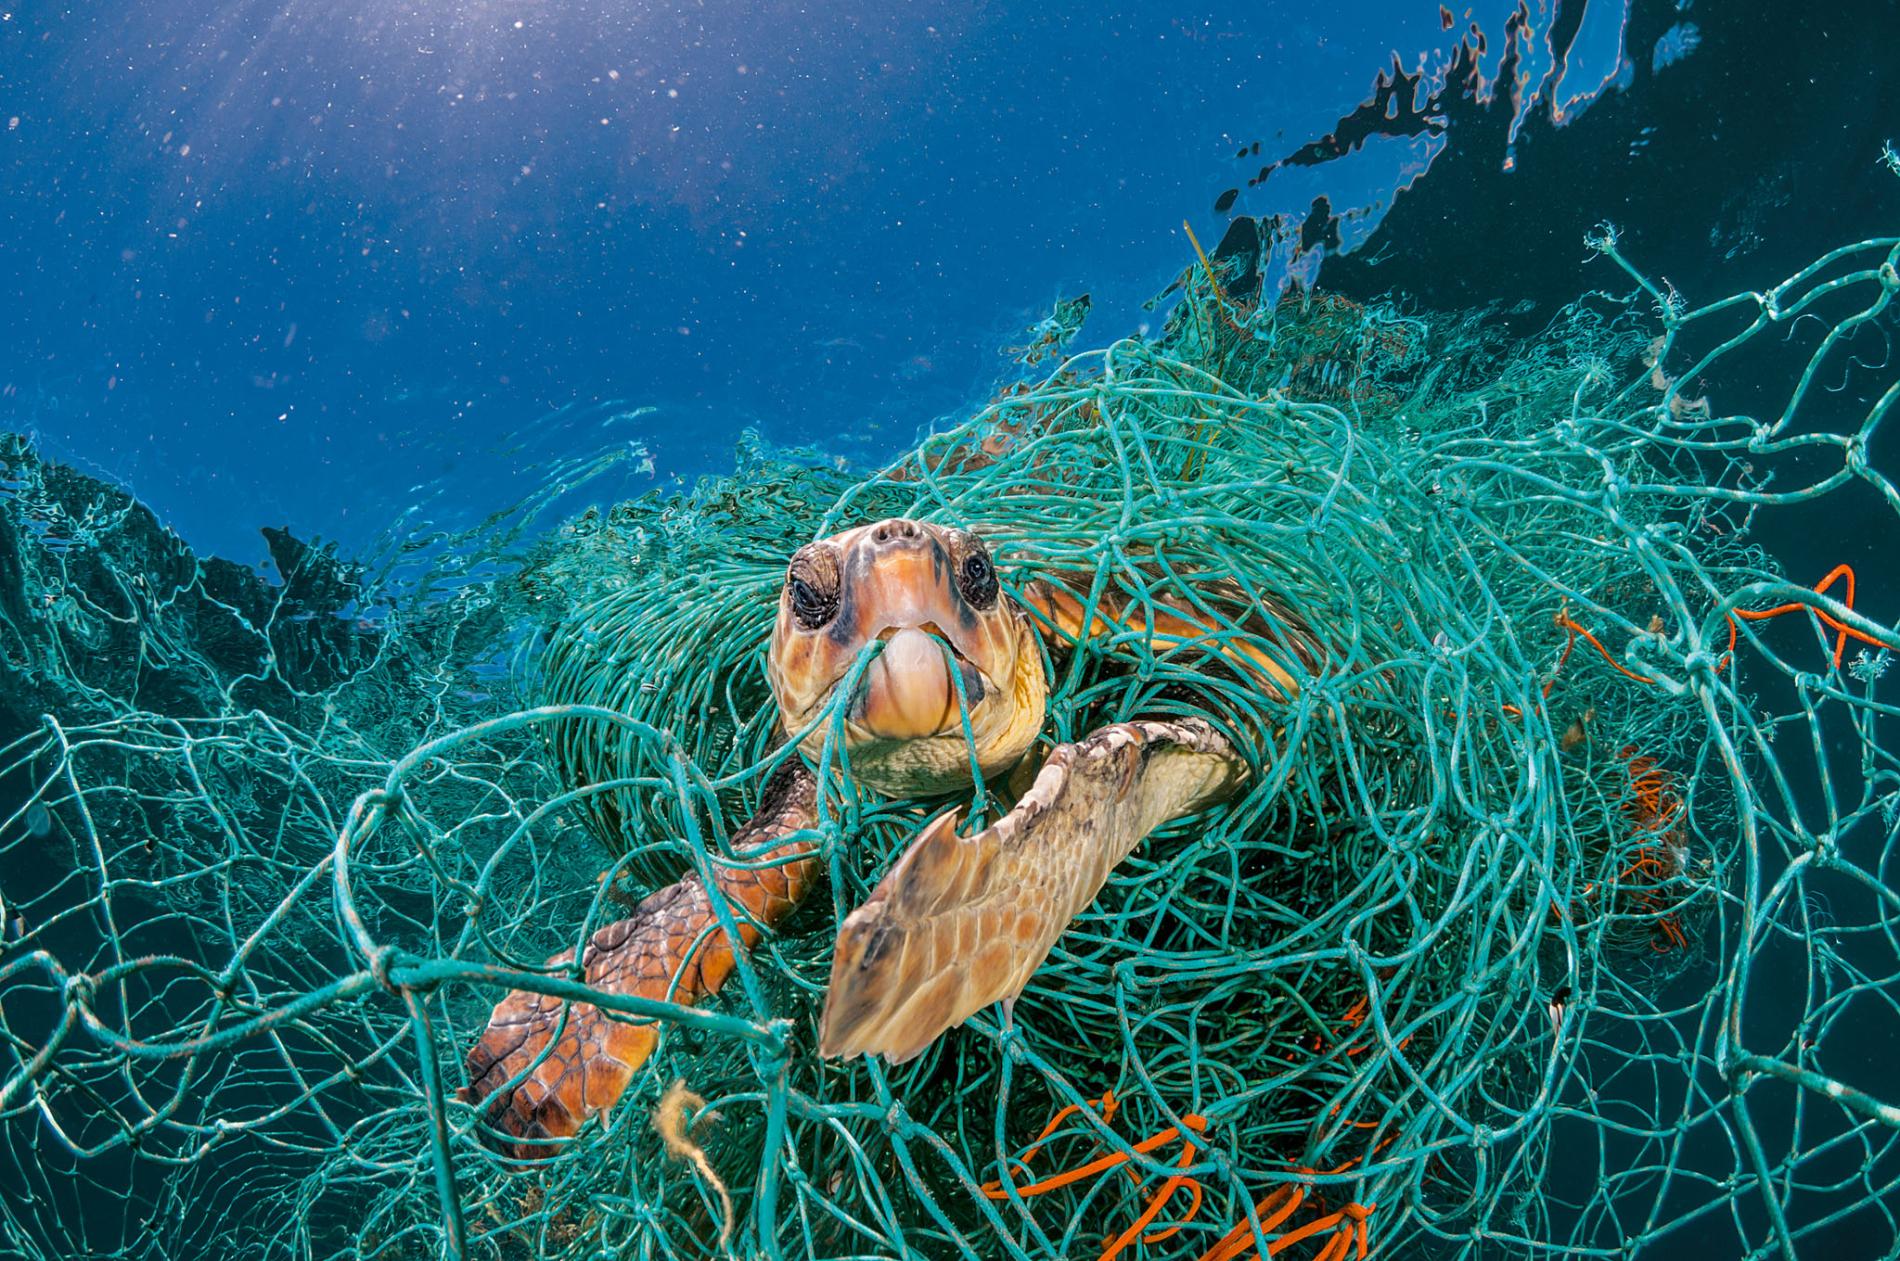 turtle-bycatch-industrial-fishing-net-ocean